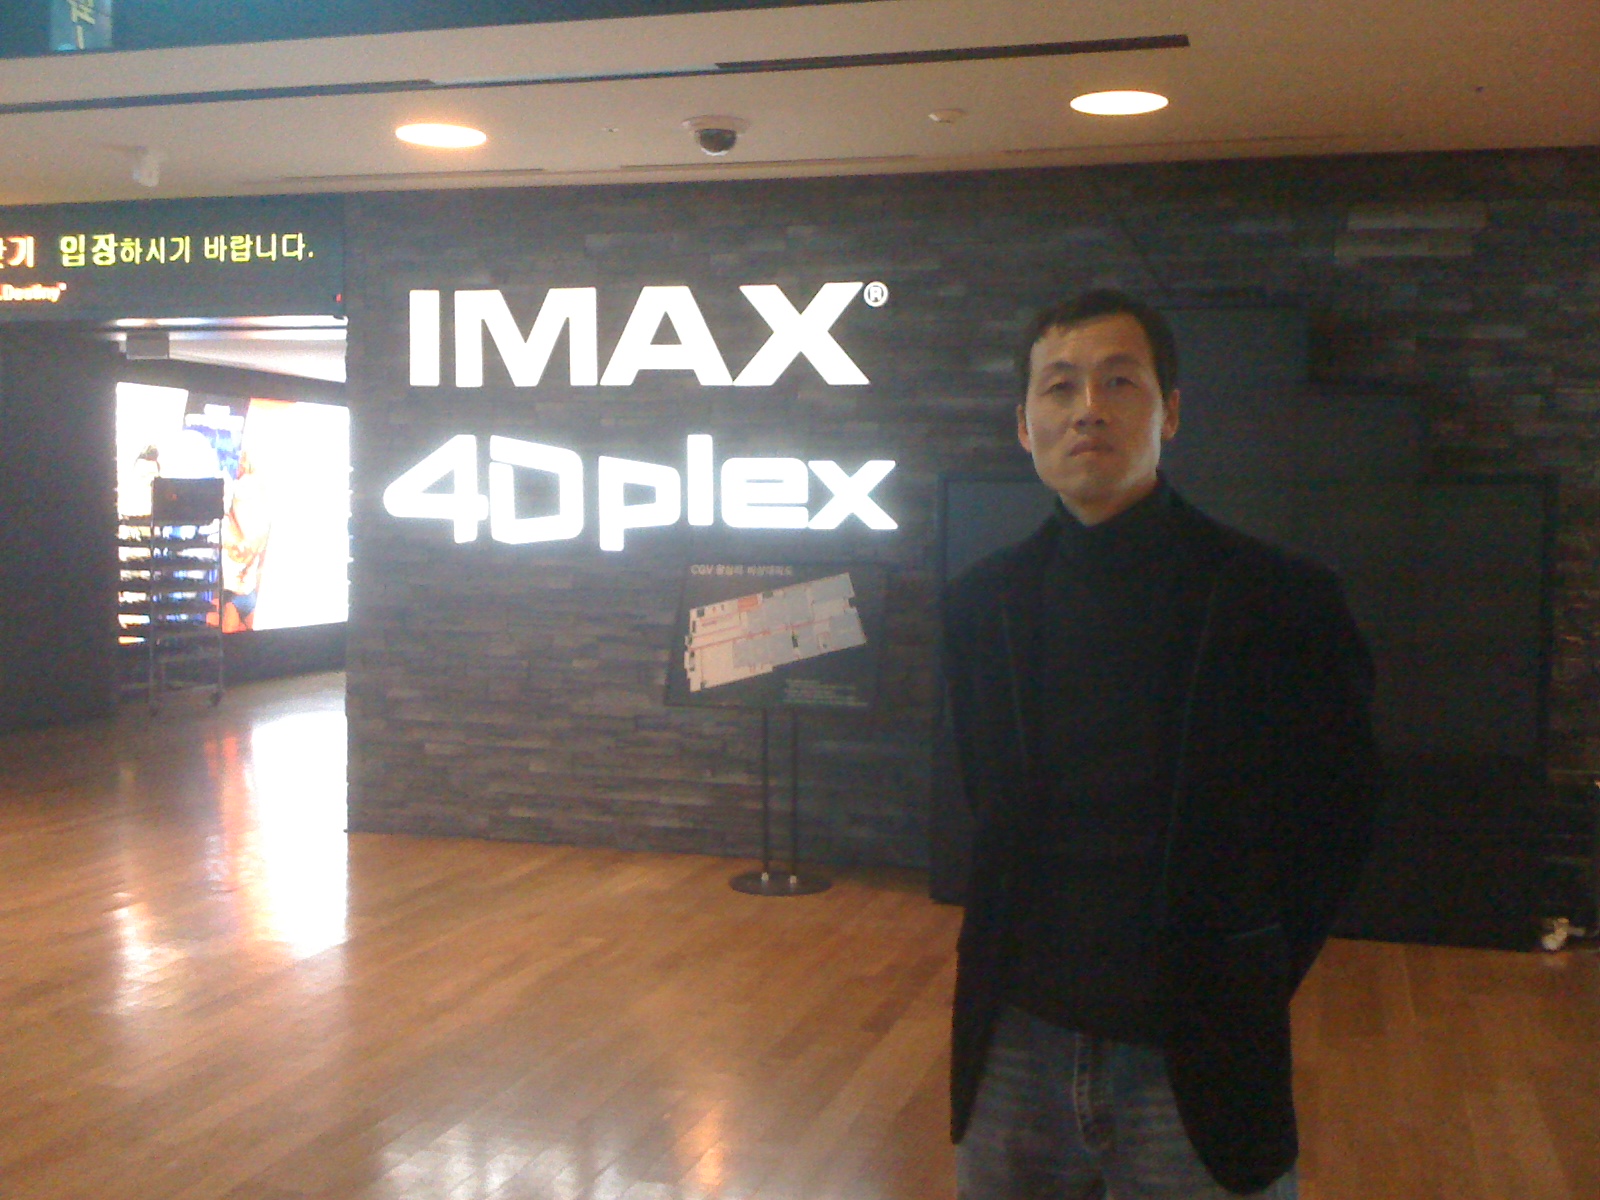 4D Theater in Seoul